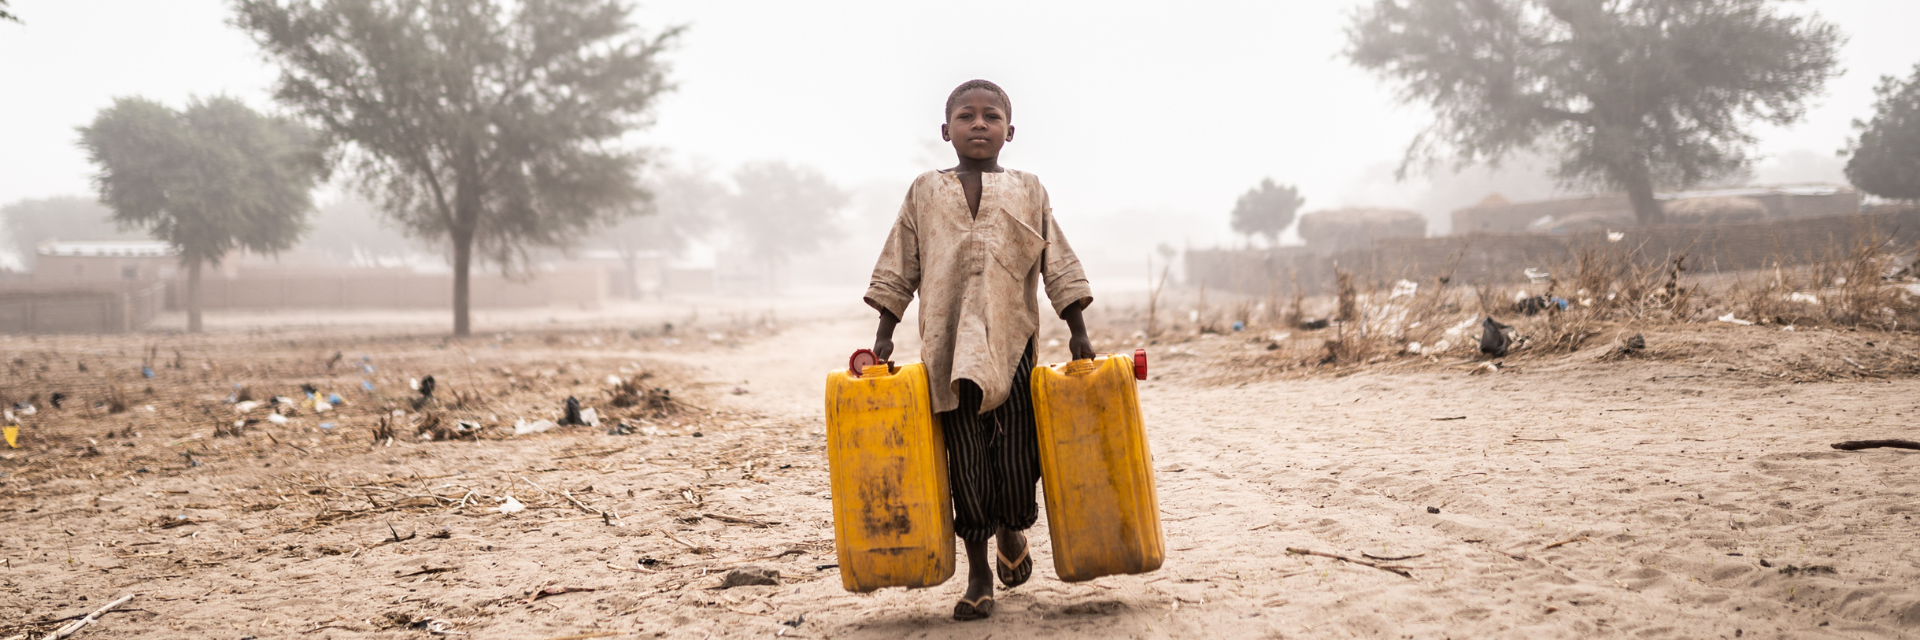 Kind trägt in einer ausgedörrten Landschaft zwei Kanister gefüllt mit Wasser.